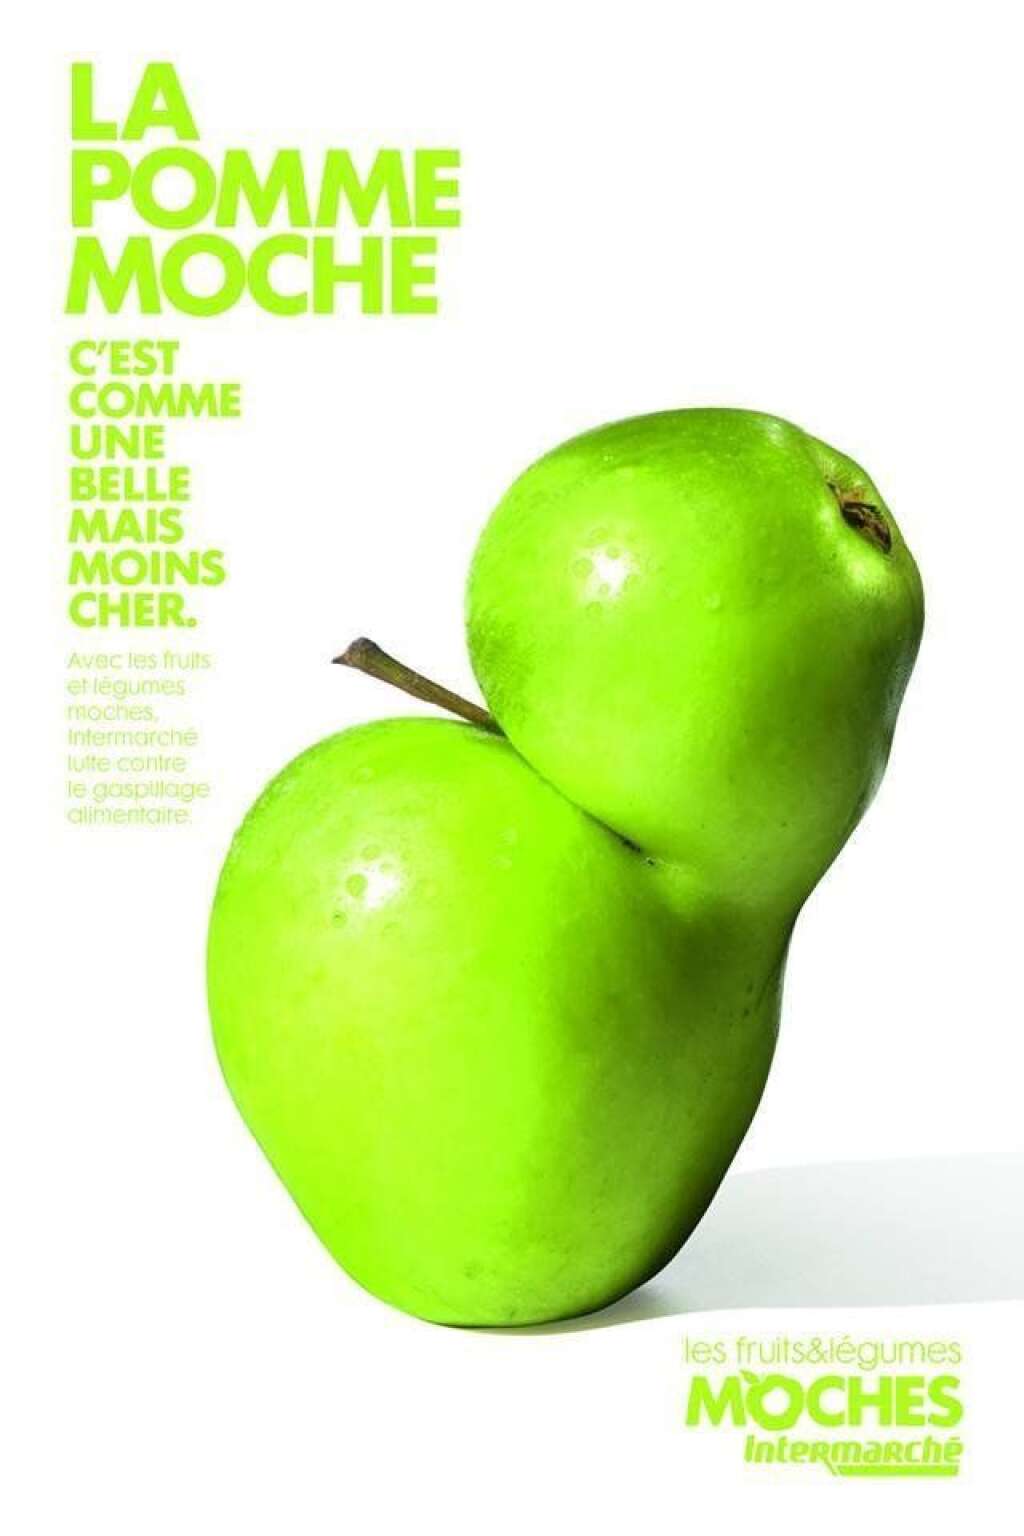 Campagne chez Intermarché - Avant Auchan et Monoprix, les supermarchés Intermarché ont eux aussi <a href="http://www.lepoint.fr/insolite/la-revanche-des-fruits-et-legumes-moches-29-04-2014-1817664_48.php" target="_blank">participé à la lutte contre le gâchis des fruits et légumes moches</a>. L'agence de publicité Marcel a, à la demande de la grande surface, créé plusieurs affiches qui ont été mises en avant dans les rayons.